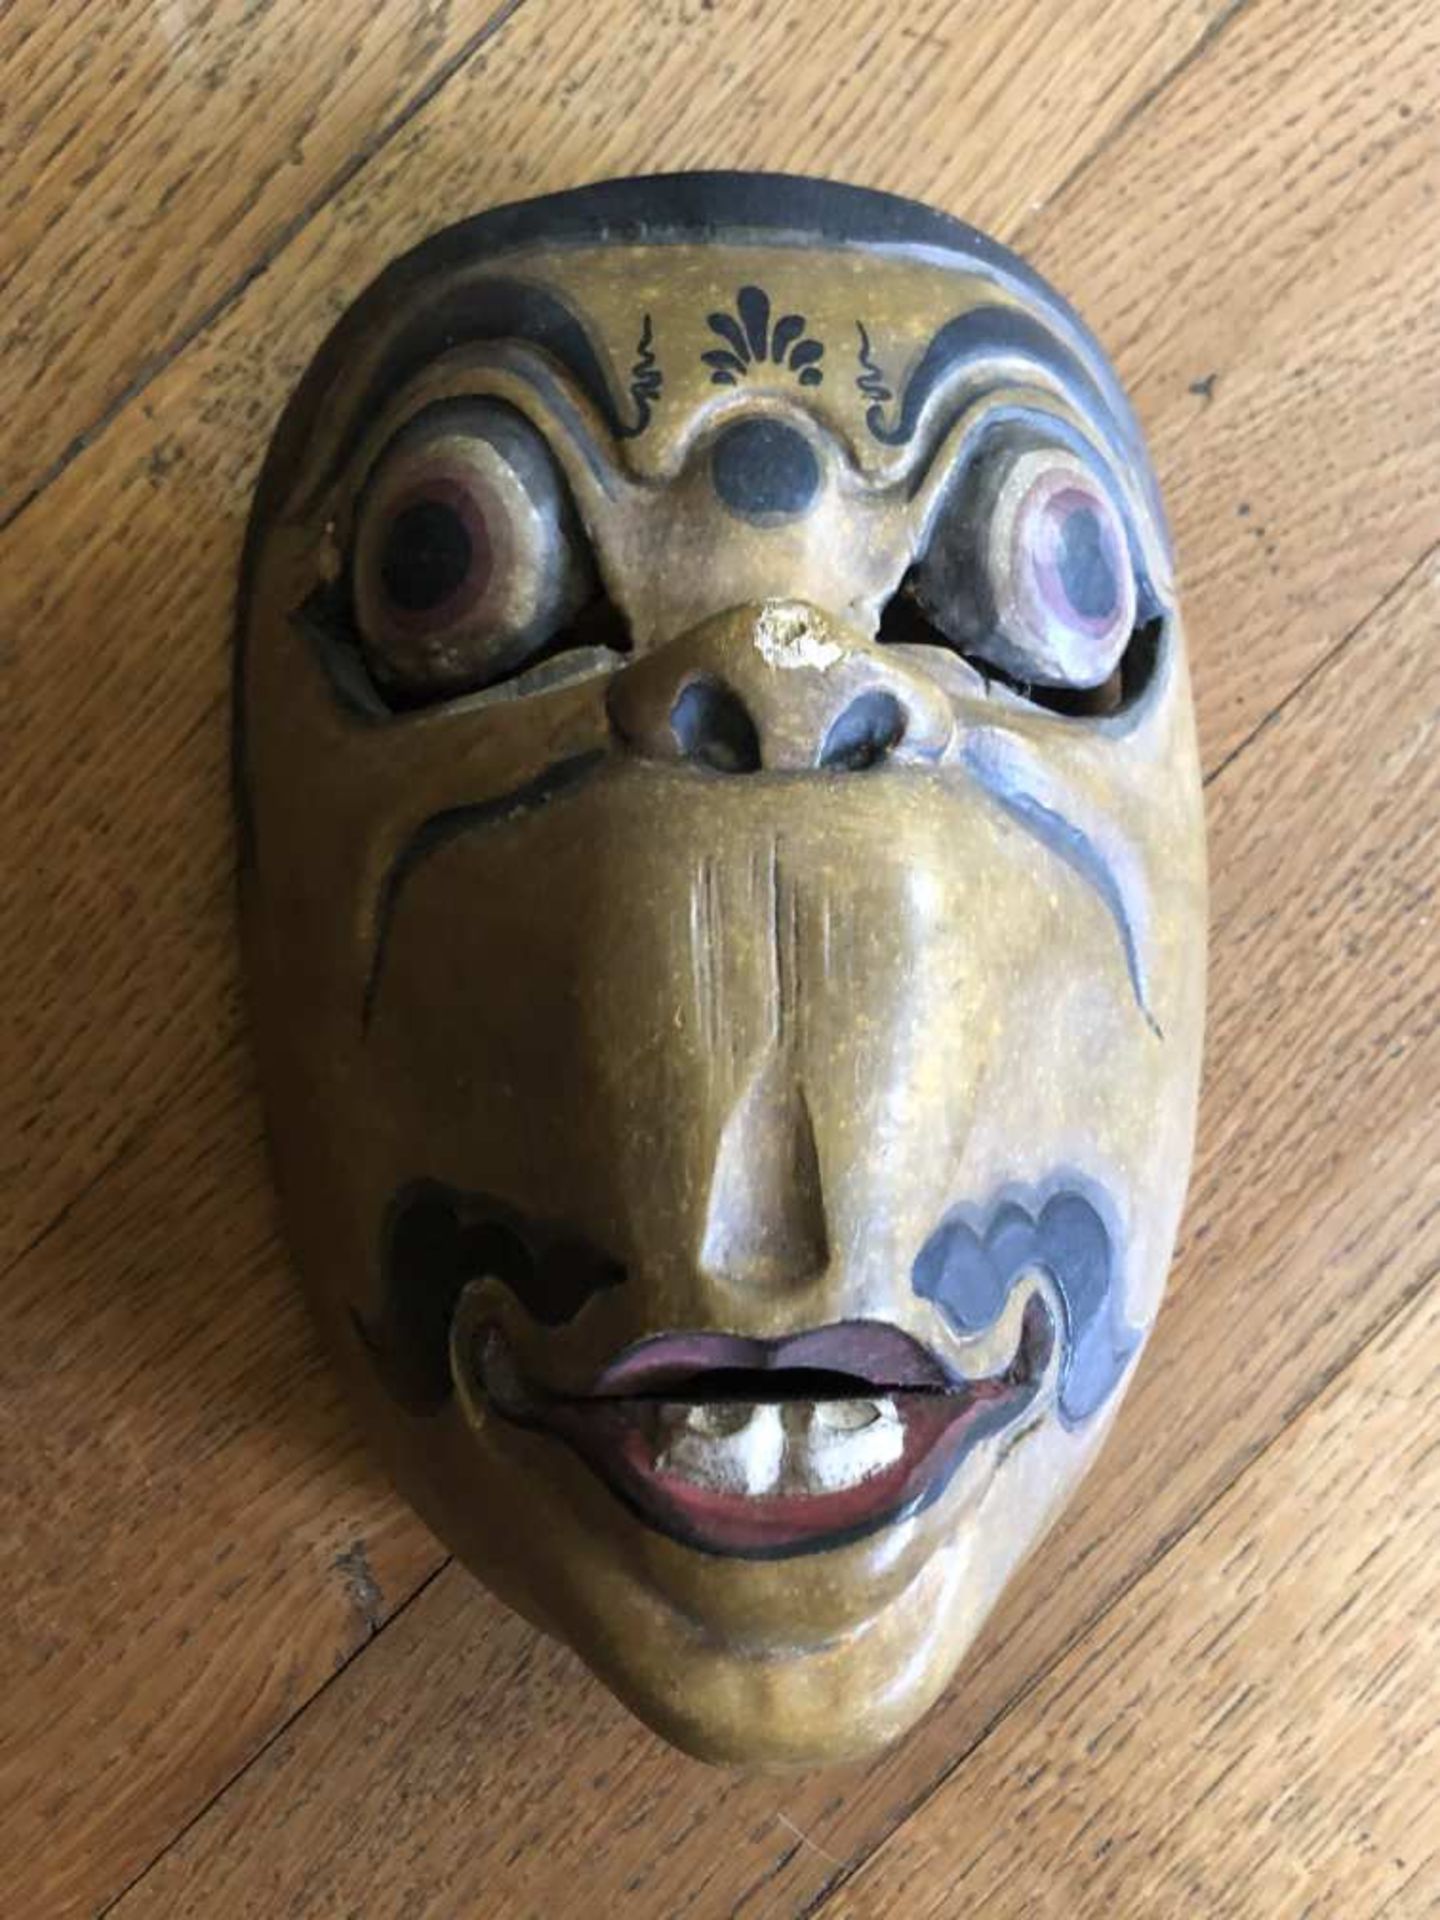 INDONESIE. Masque de théâtre traditionnel représentant un animal fantastique. XXe siècle. H. 22 cm